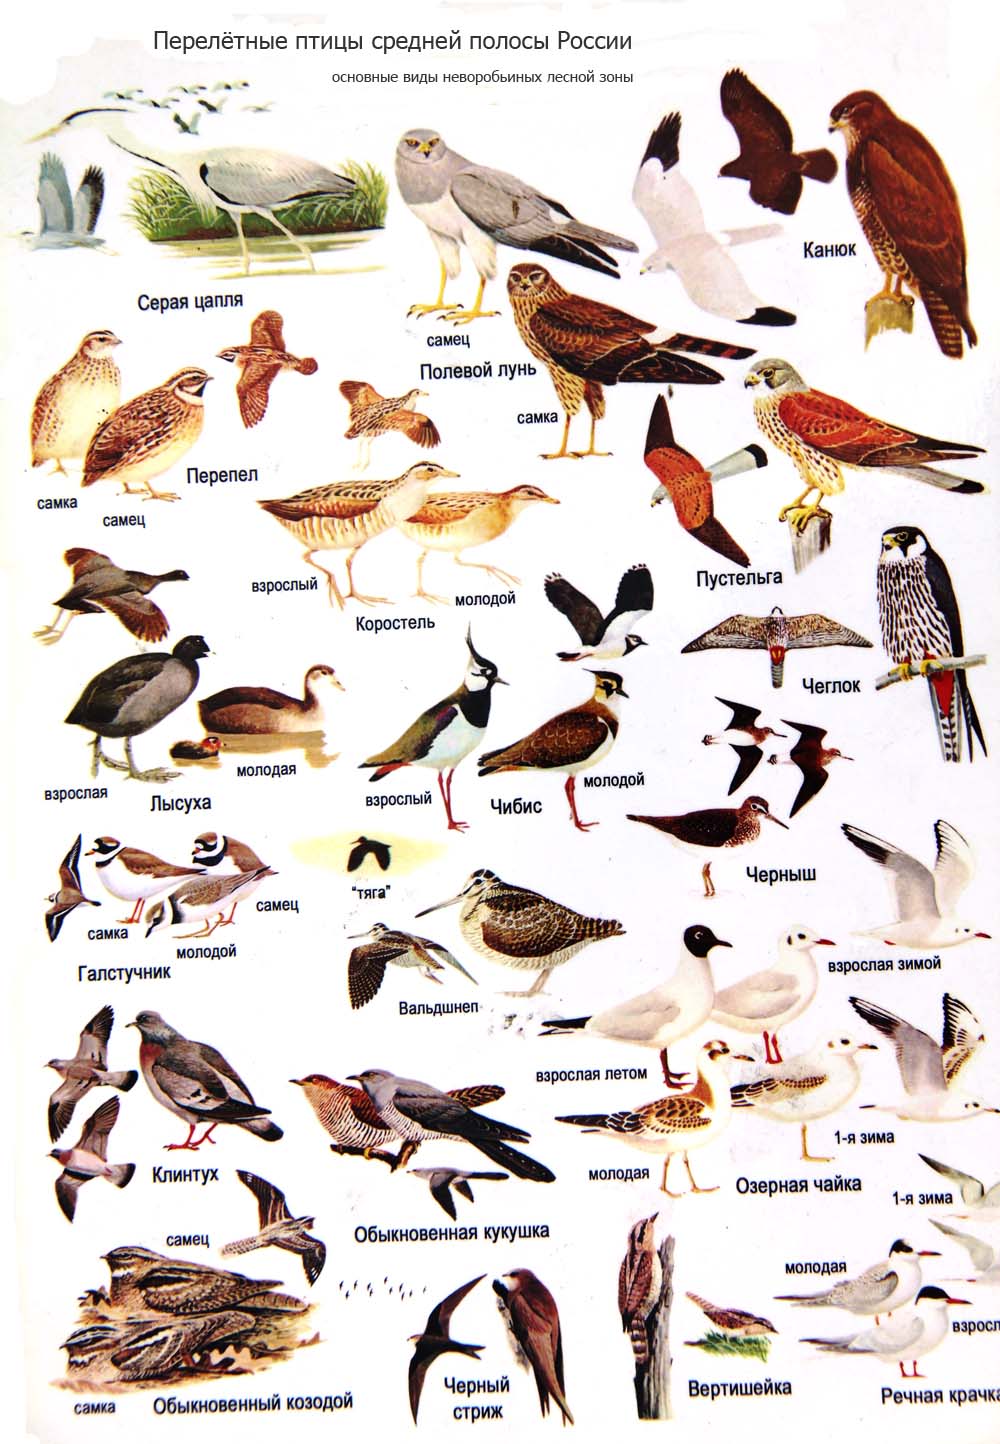 Определить птицу по фото с названием